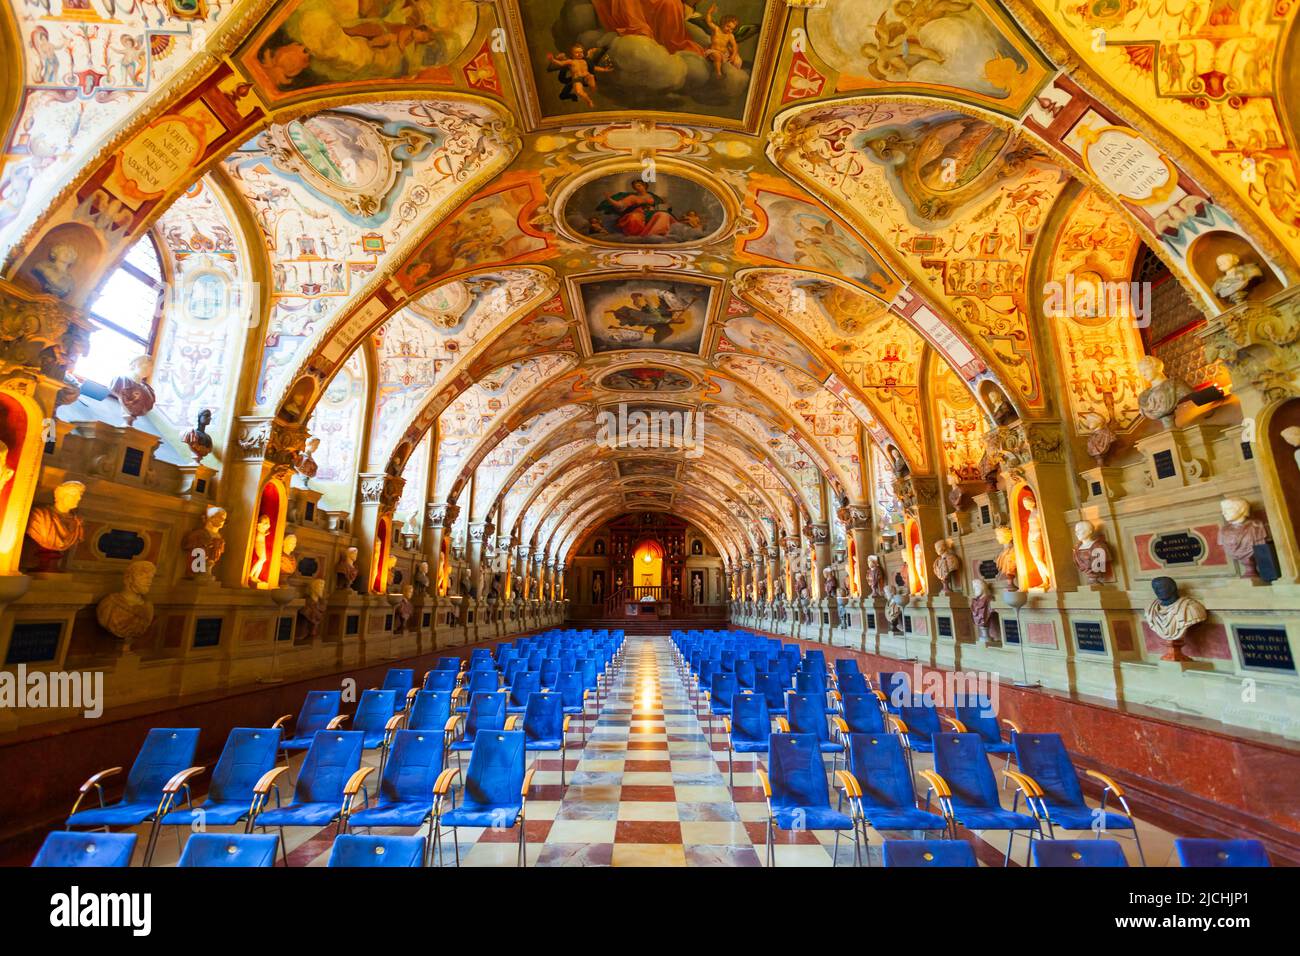 Múnich, Alemania - 07 de julio de 2021: Interior del Museo de la Residencia de Múnich. Munchen Residenz es el antiguo palacio real de Munich, Alemania. Foto de stock